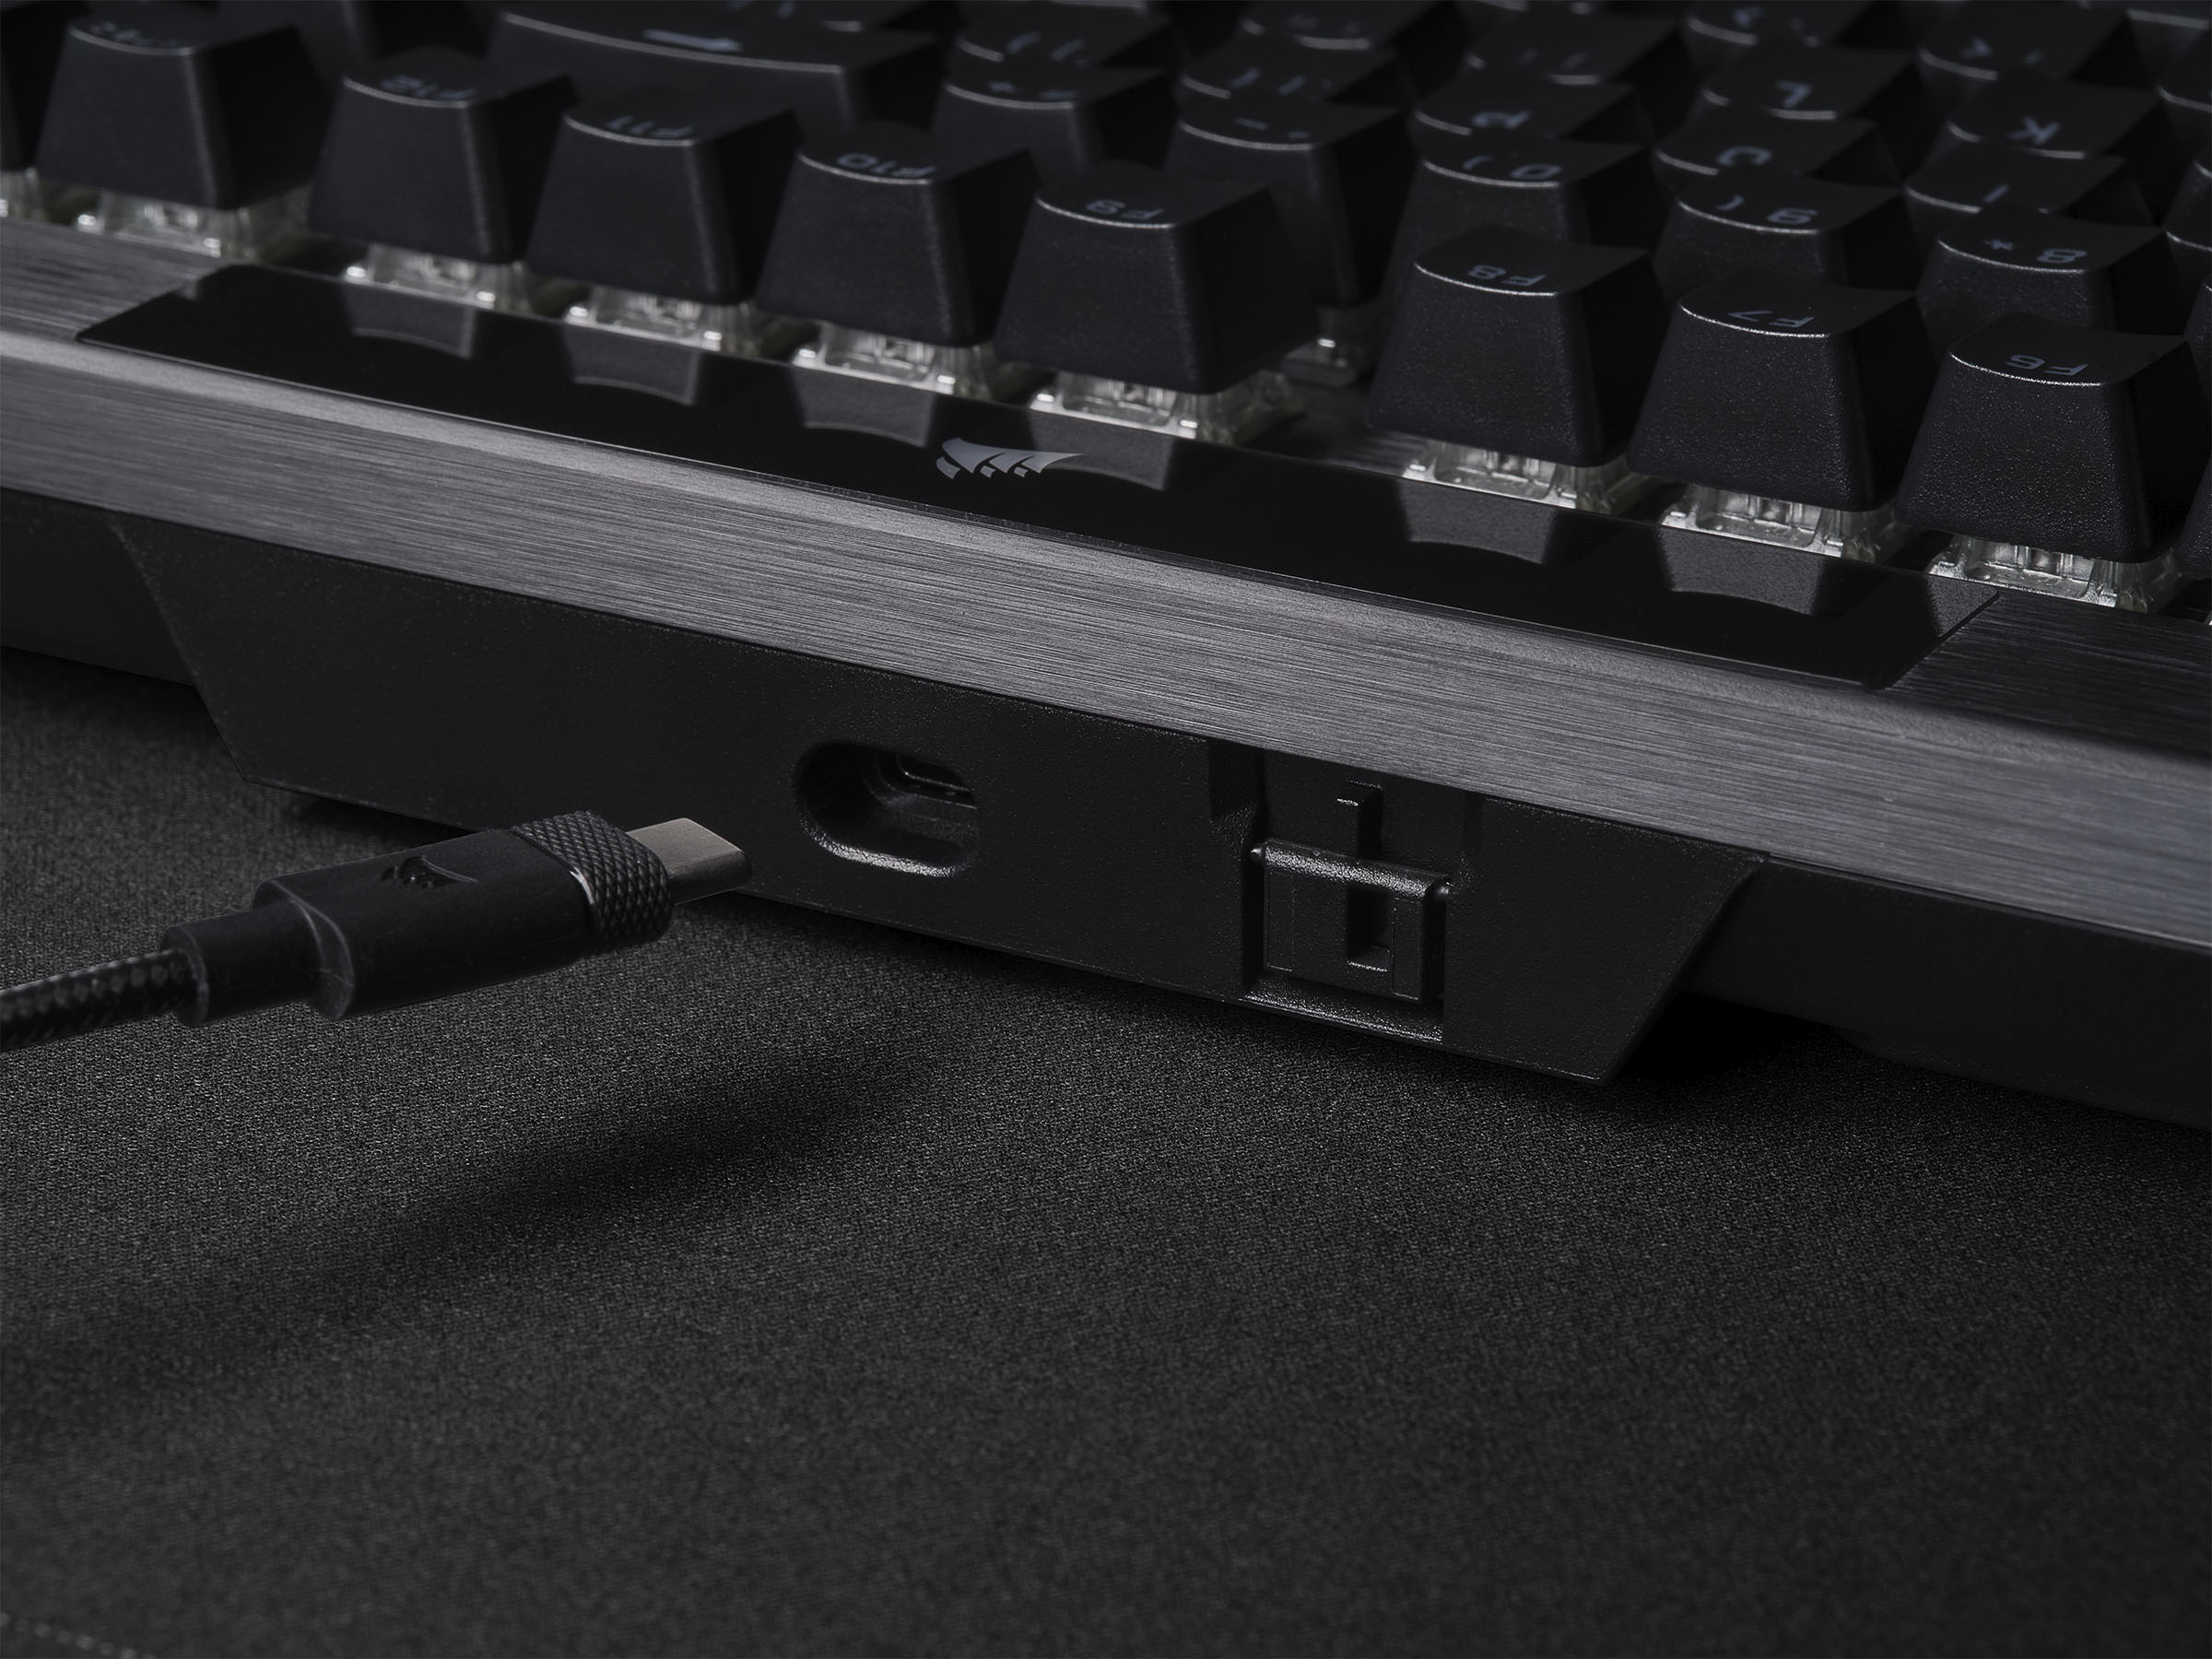 Corsair K70 RGB Pro Gaming Keyboard